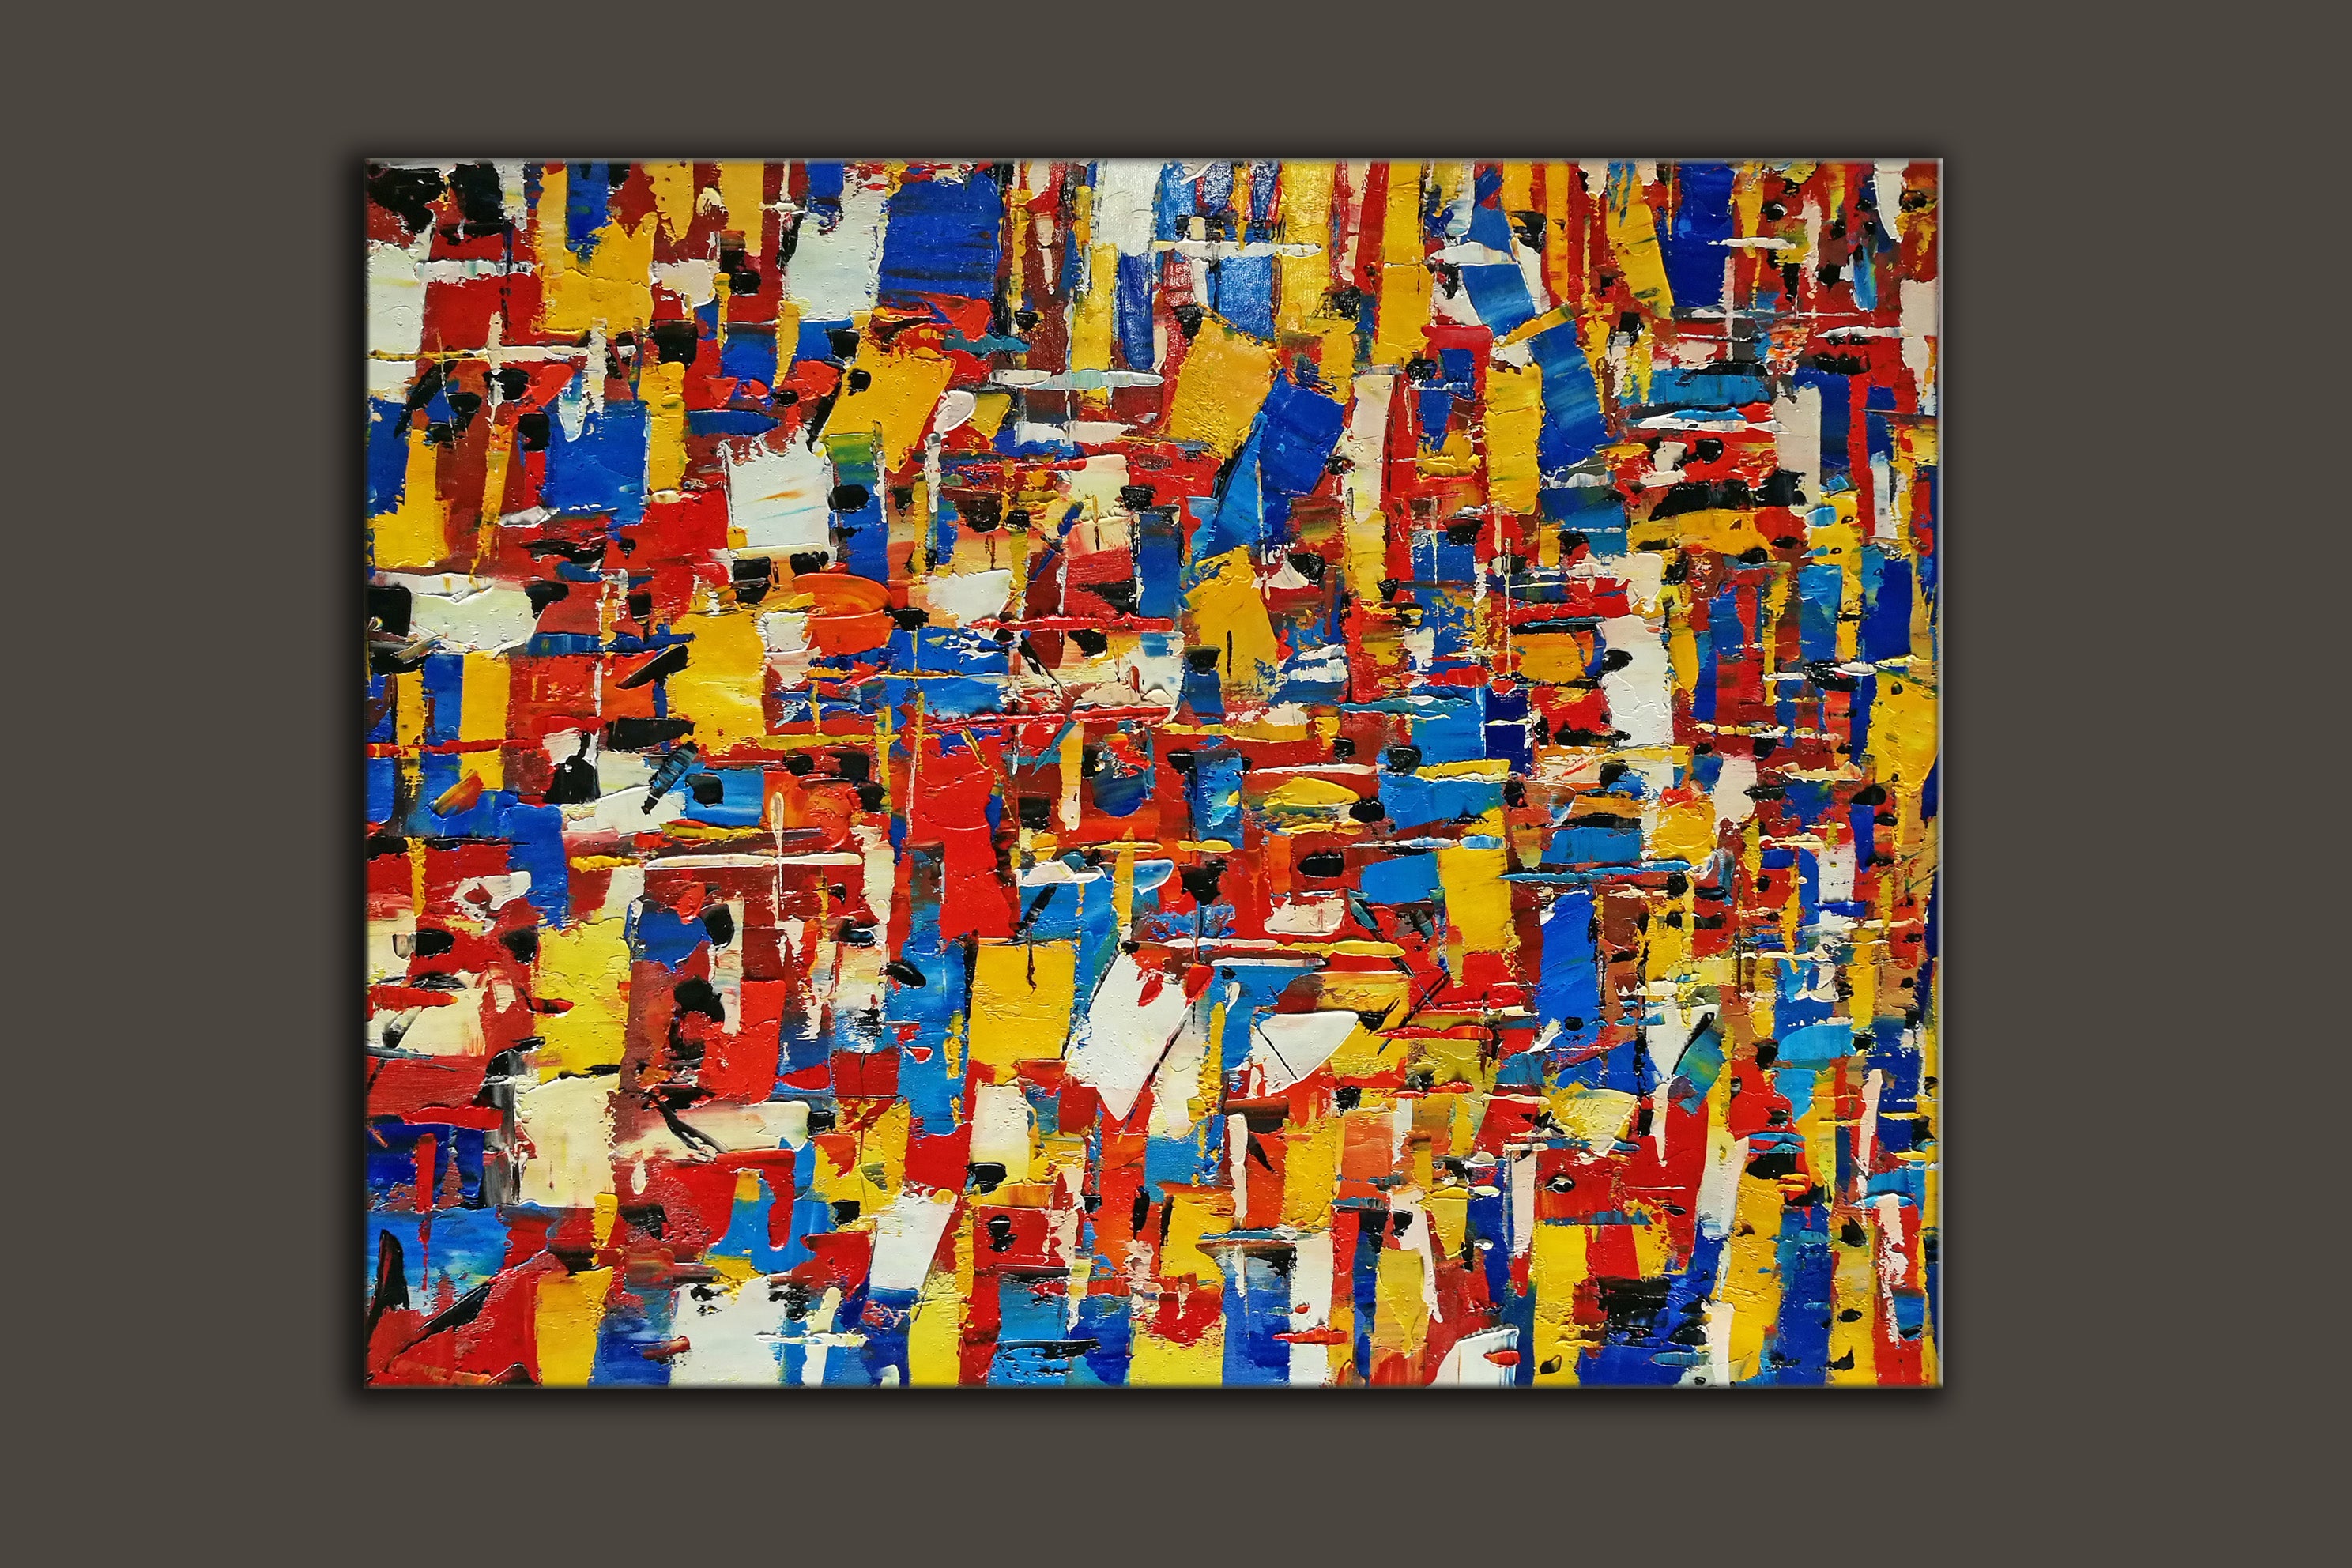 Blue splatter paint artist, abstract art L603 – LargeArtCanvas